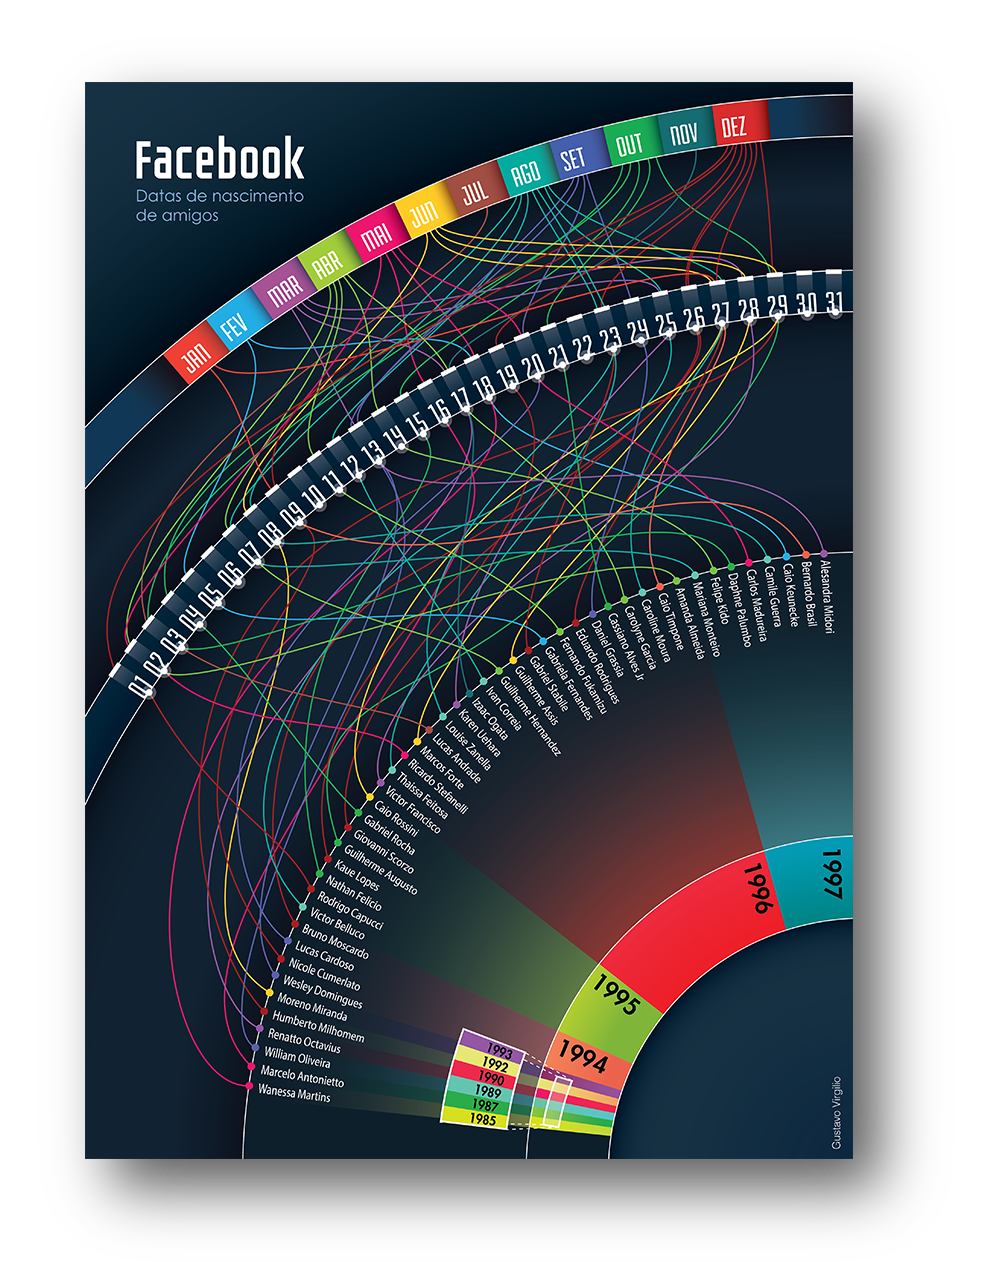 infographic friend's birthdays facebook data visualization